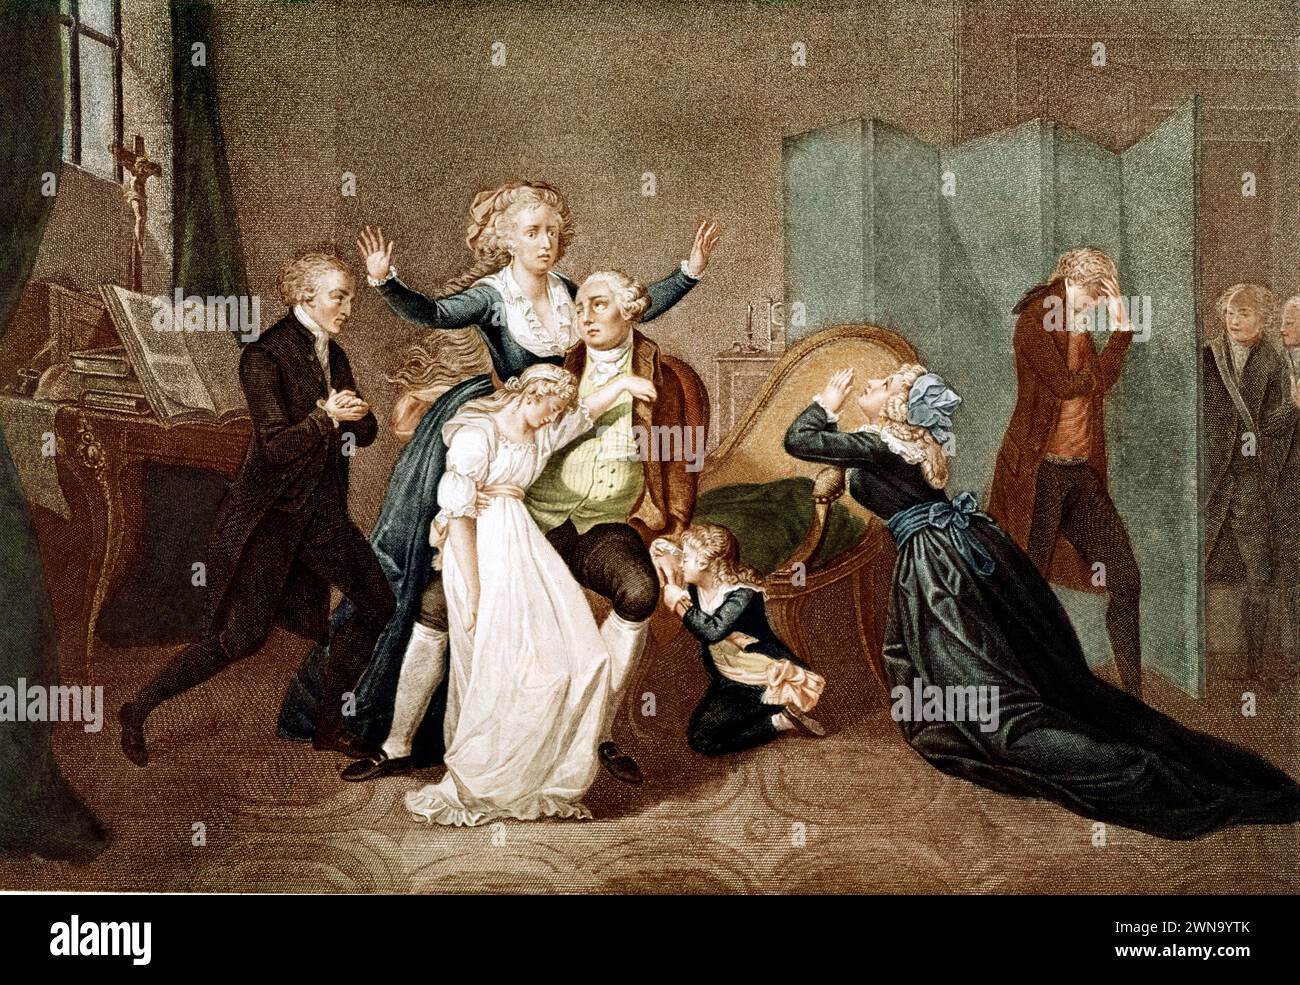 L'ultimo incontro di Luigi XVI con la sua famiglia (Maria Antonietta e i loro figli), alla vigilia della sua esecuzione dopo aver parlato la notte del 20/01/1793 con il suo confessore Edgworth. Incisione sd. agli inizi del xix secolo. Foto Stock